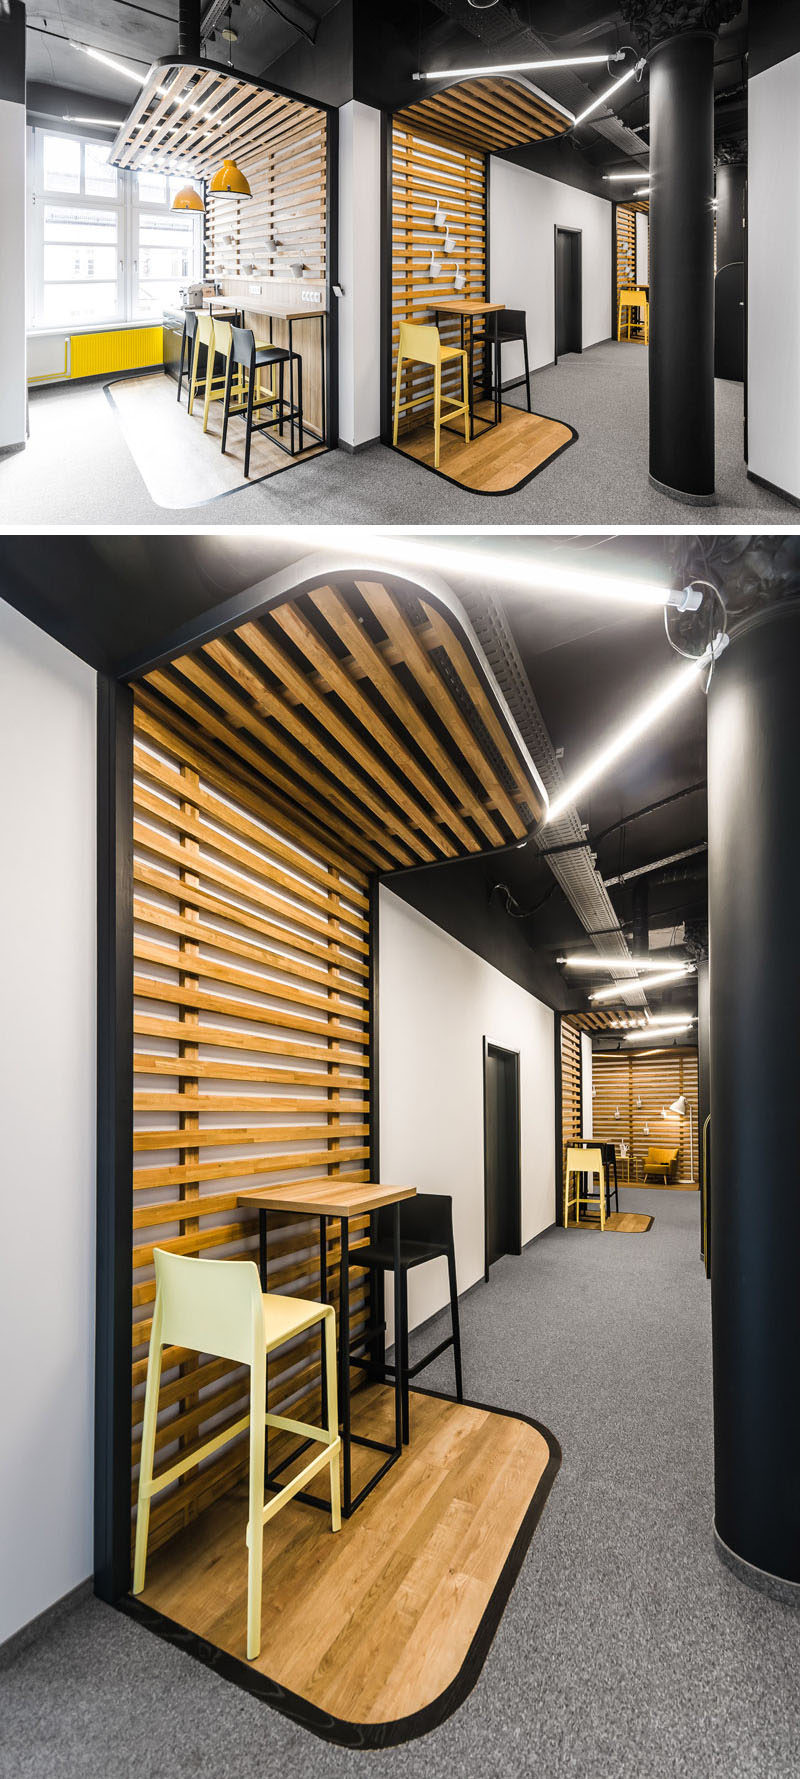 В этом современном офисе есть четко обозначенные зоны отдыха с деревянными планками и черной рамкой, обрамляющие деревянные барные столы с черно-желтыми сиденьями.